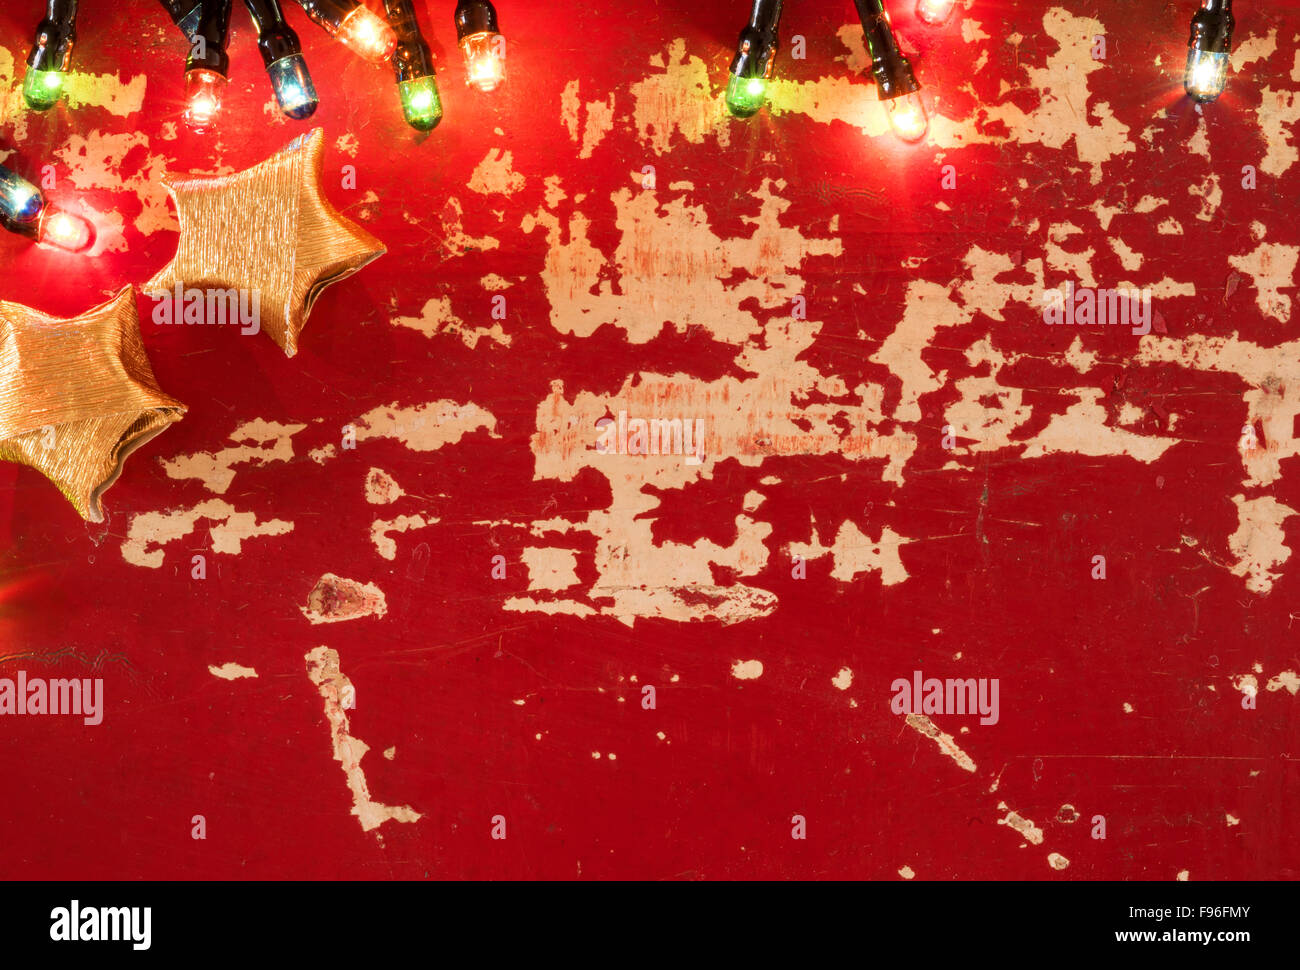 Urlaub Konzept Backdrop Vorlage, Goldpapier Sterne Dekoration und Weihnachtsbeleuchtung auf leere retro Grunge Holz Hintergrund. Stockfoto